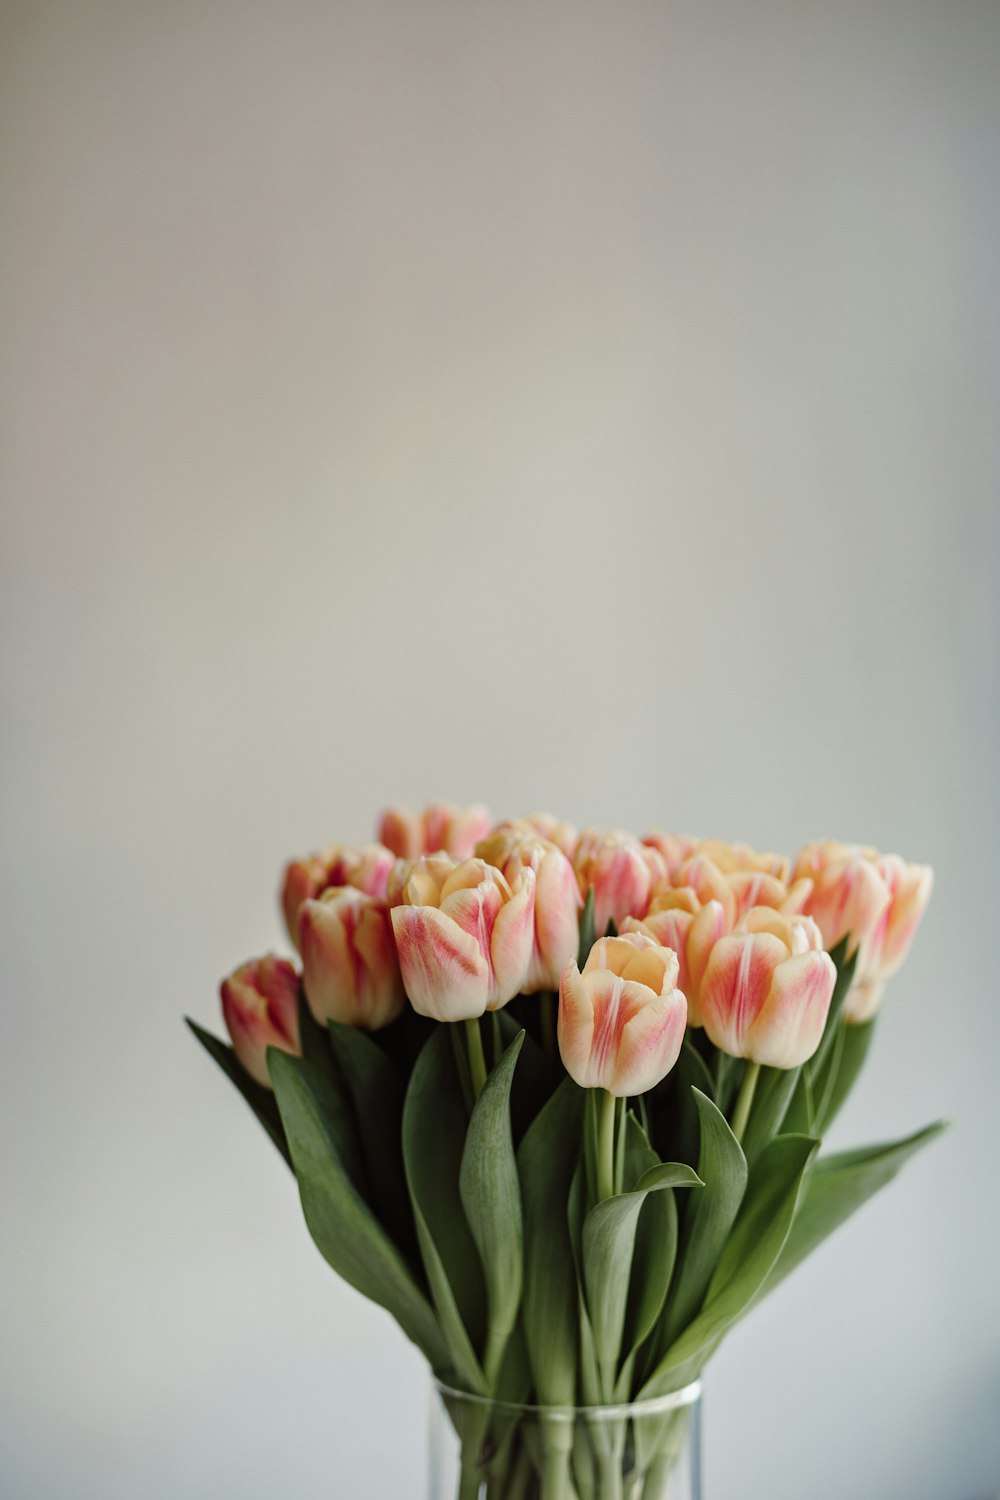 tulipani rosa in fiore foto ravvicinata